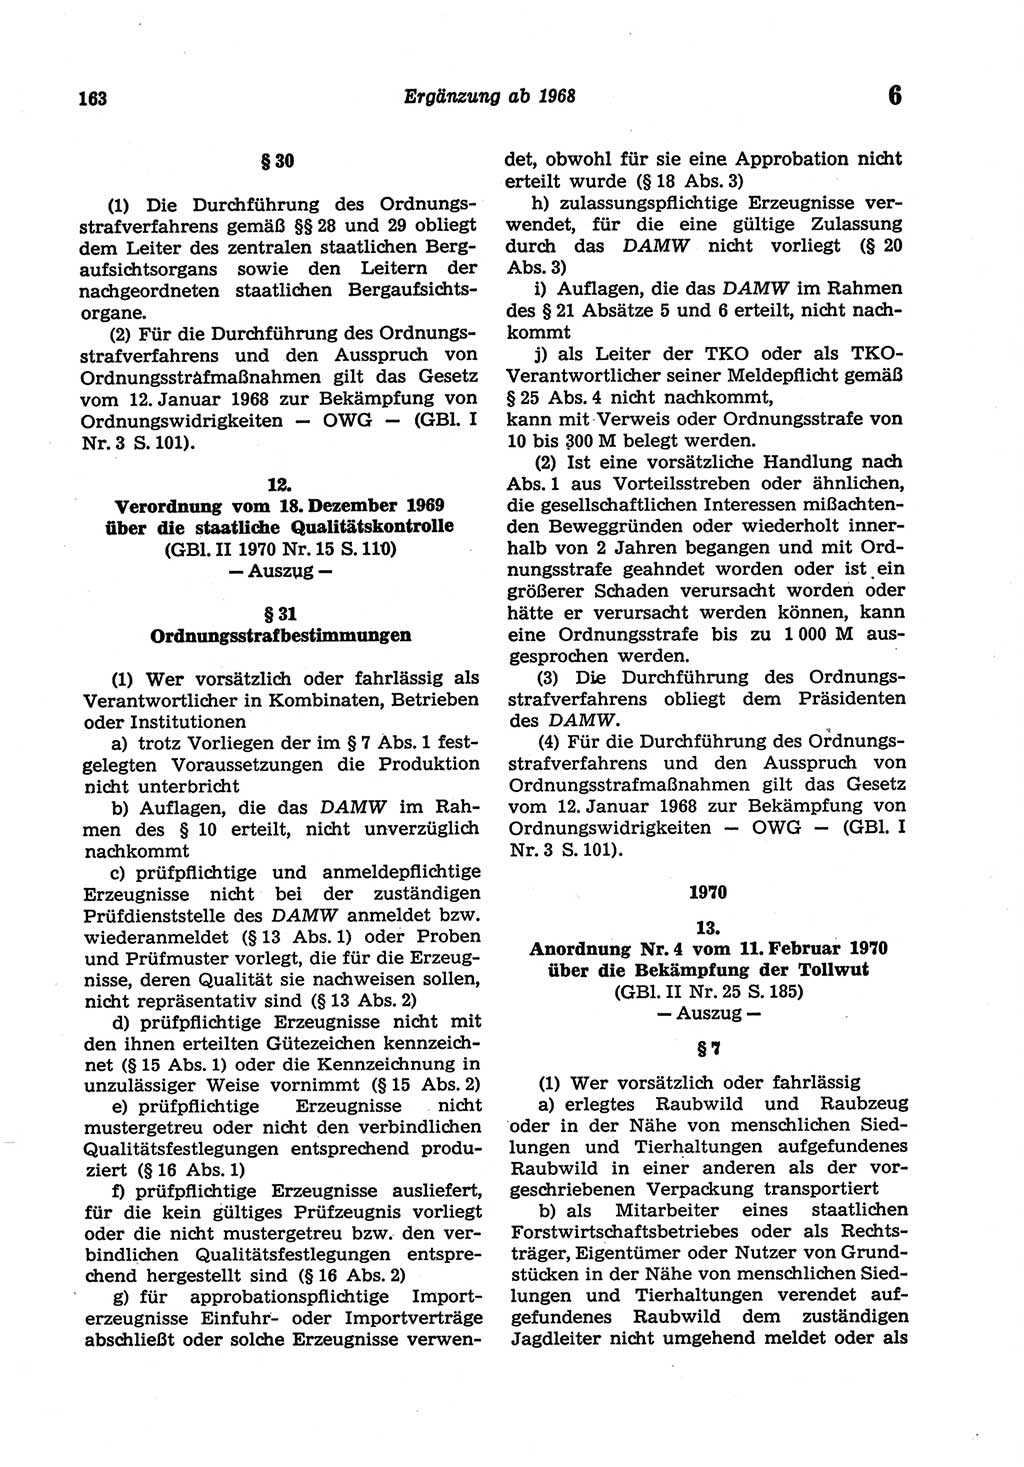 Strafgesetzbuch (StGB) der Deutschen Demokratischen Republik (DDR) und angrenzende Gesetze und Bestimmungen 1977, Seite 163 (StGB DDR Ges. Best. 1977, S. 163)